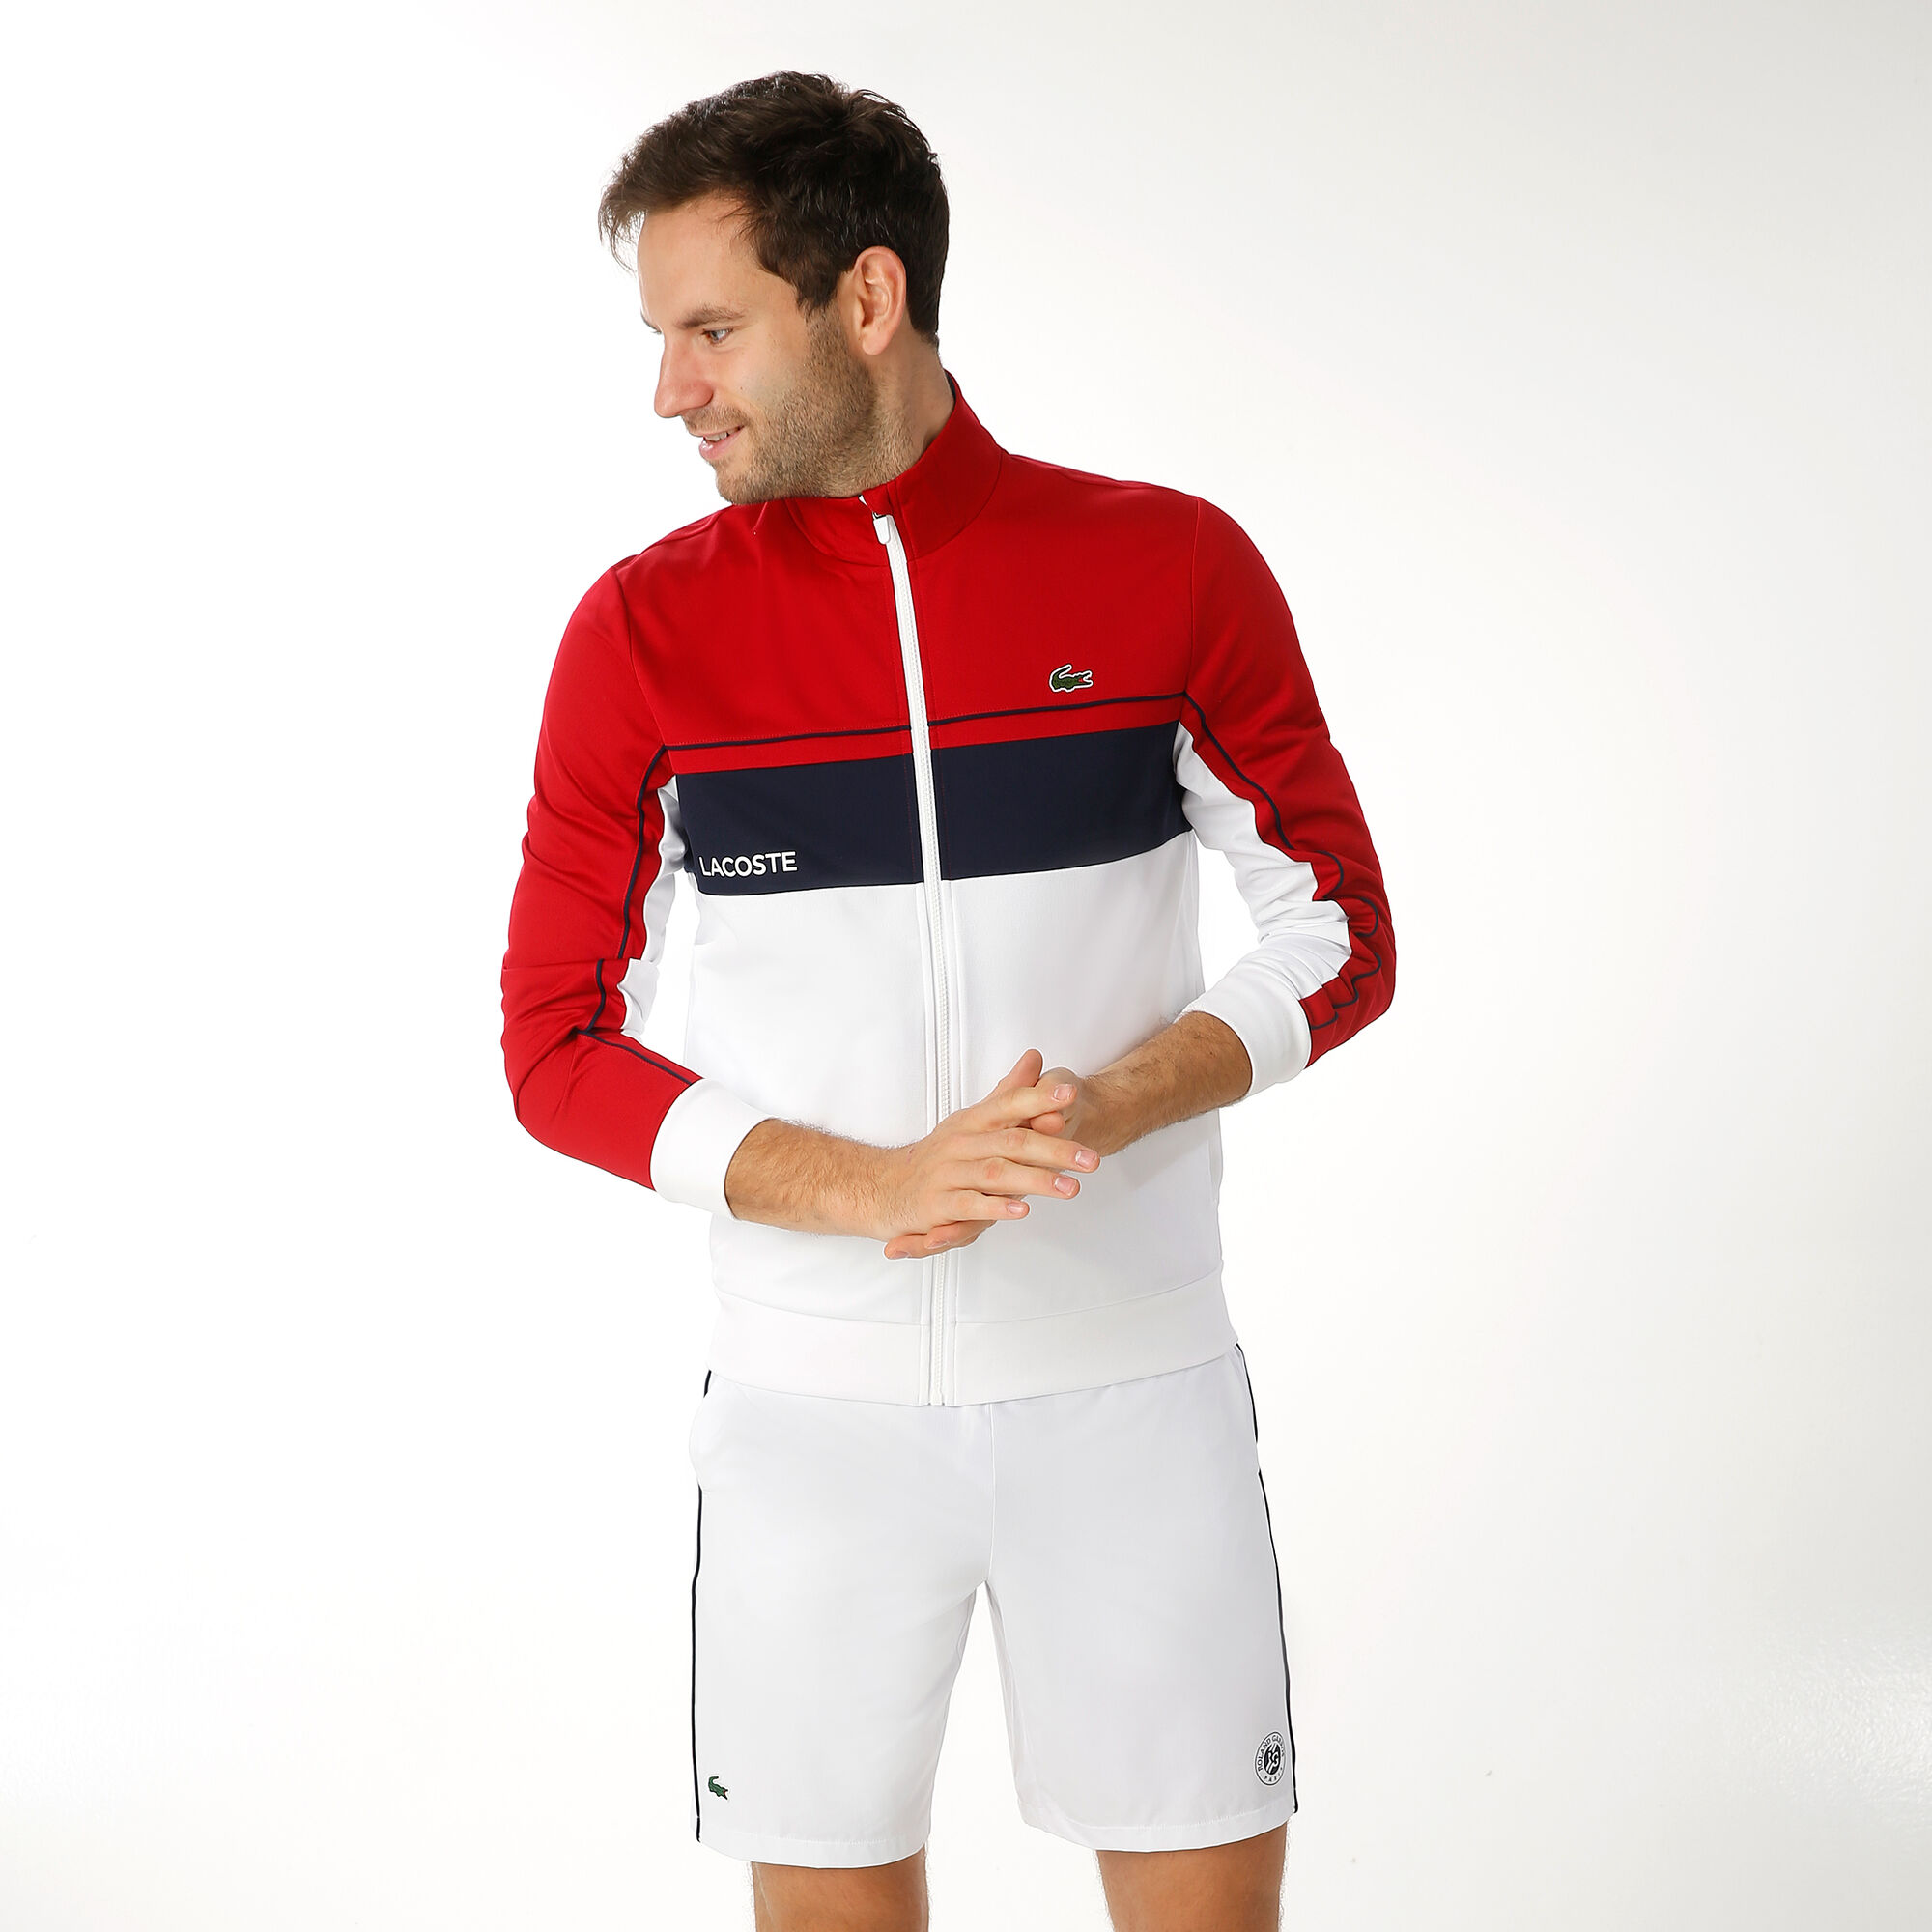 Tennis Point | kaufen Lacoste Trainingsjacke DE Weiß, Rot Herren online